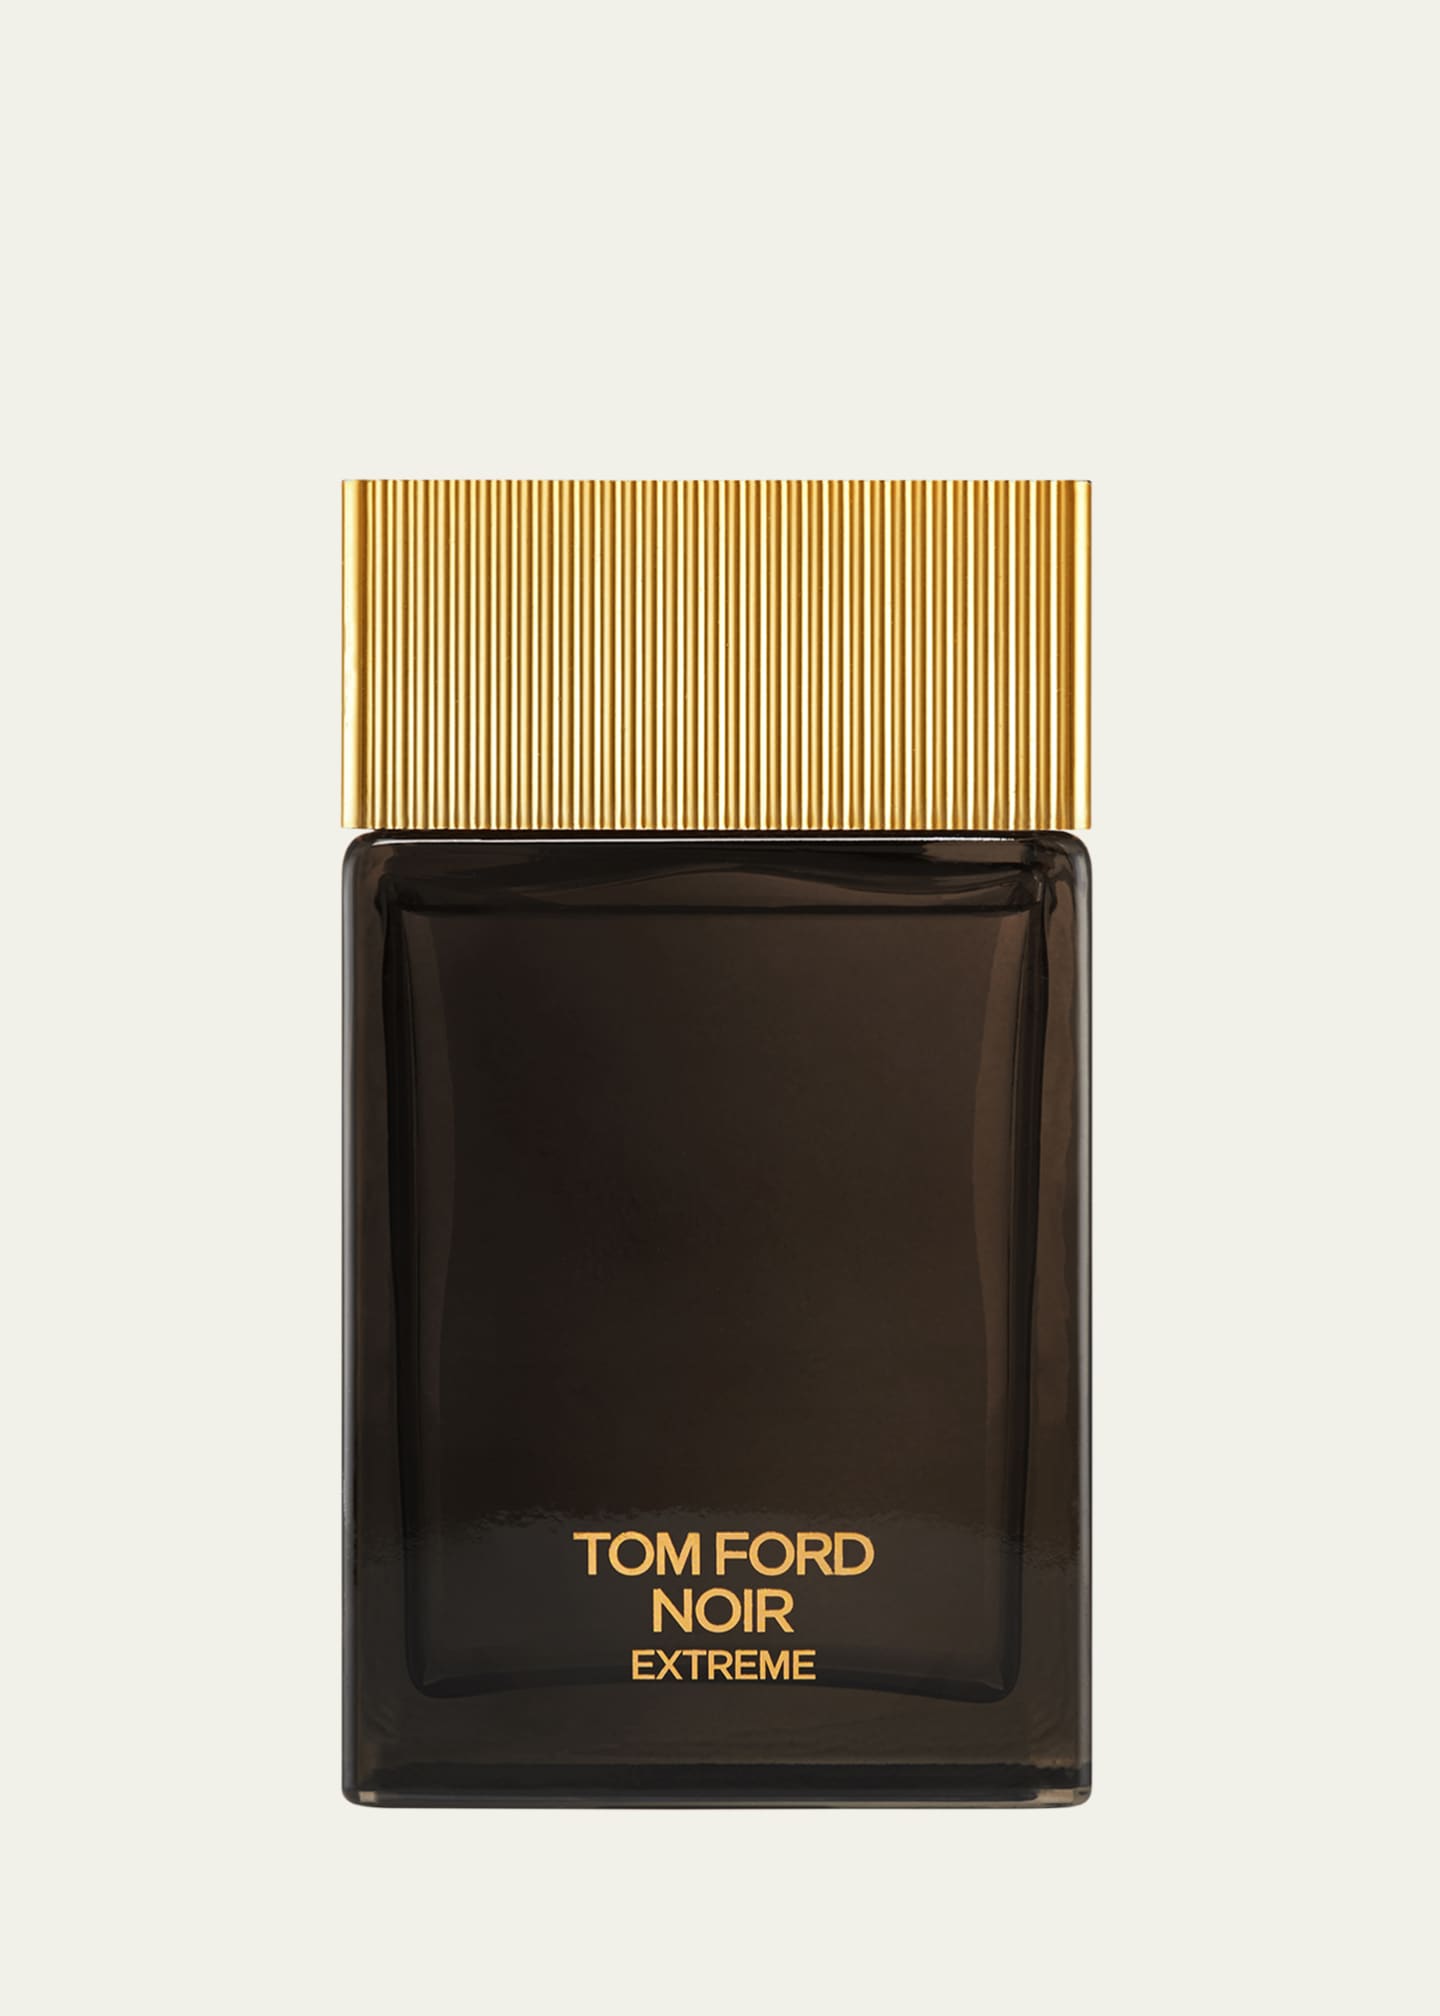 TOM FORD Noir Extreme Eau de Parfum Fragrance, 3.4 oz